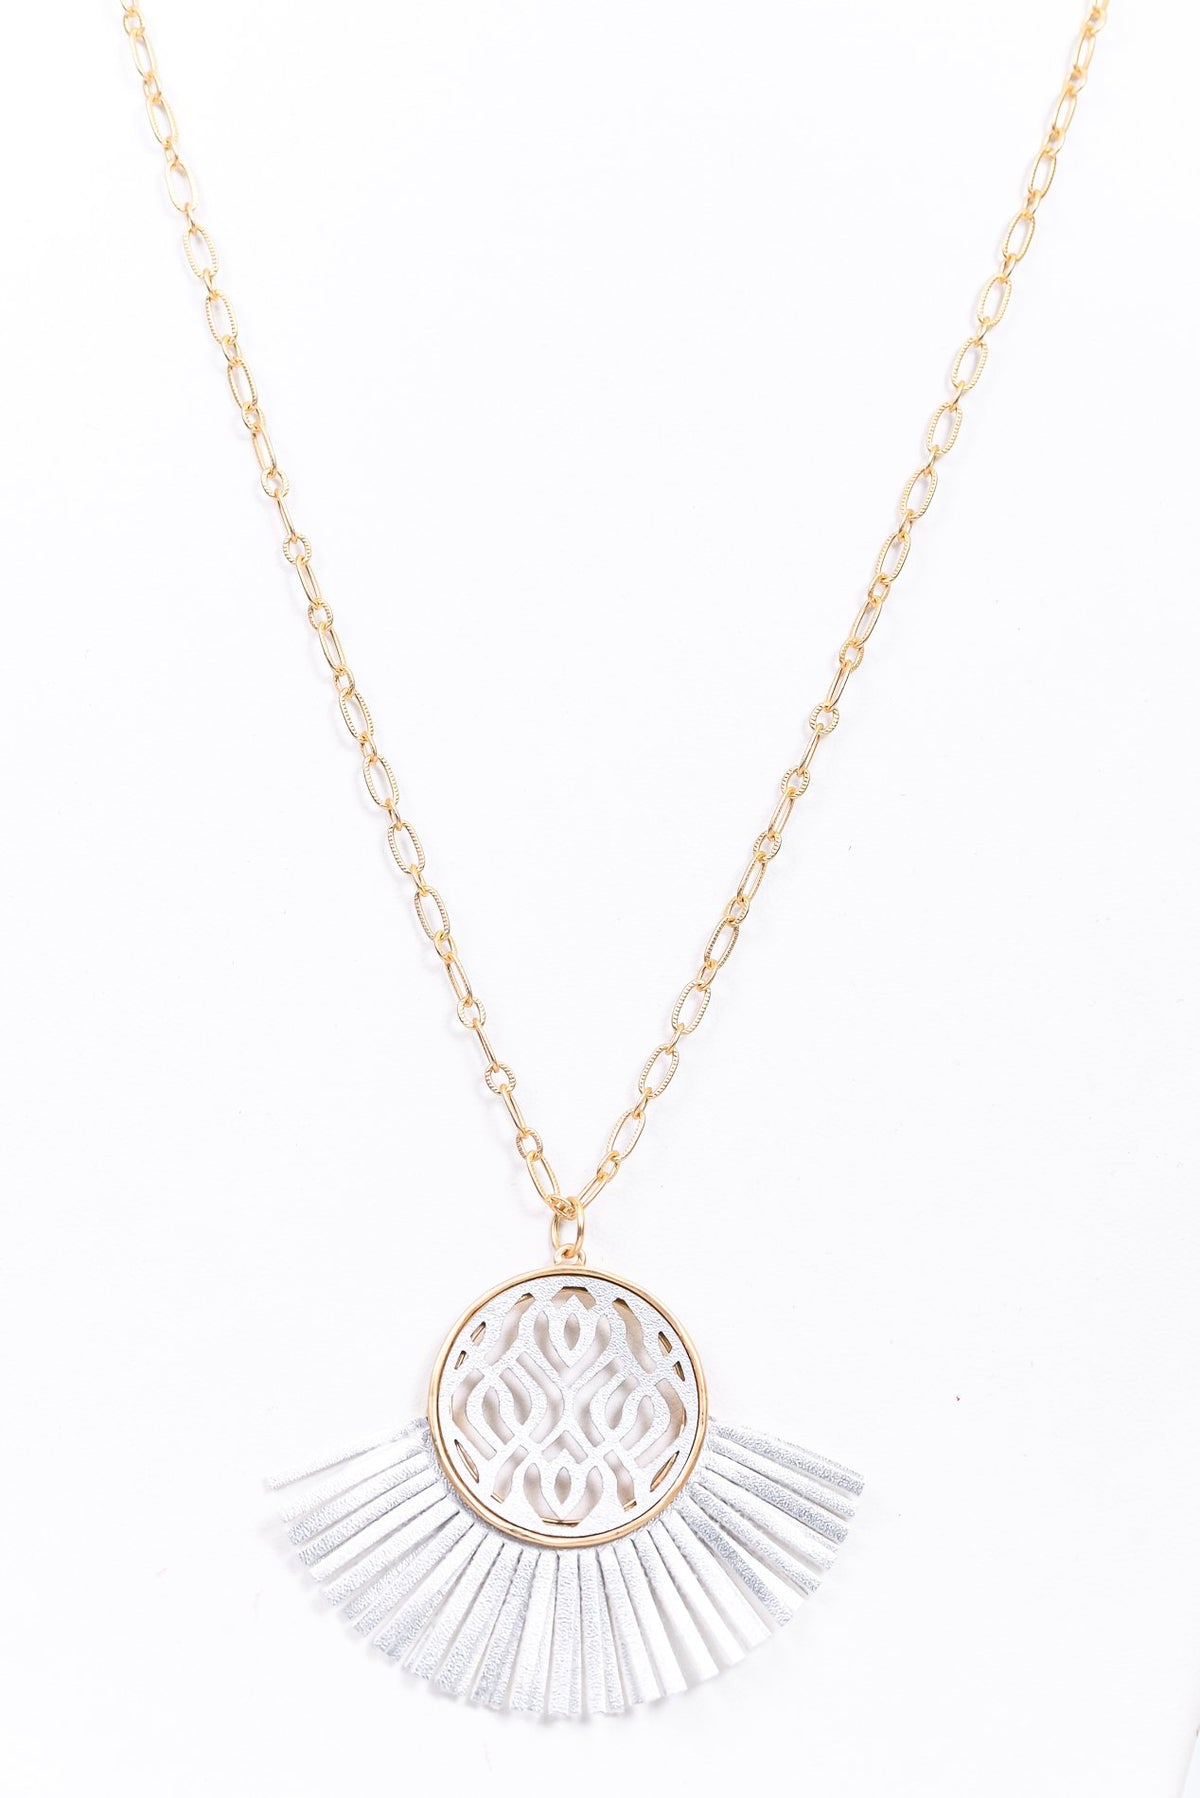 Gold/Silver Filigree/Leather Tassel/Fan Pendant Necklace - NEK3799SI